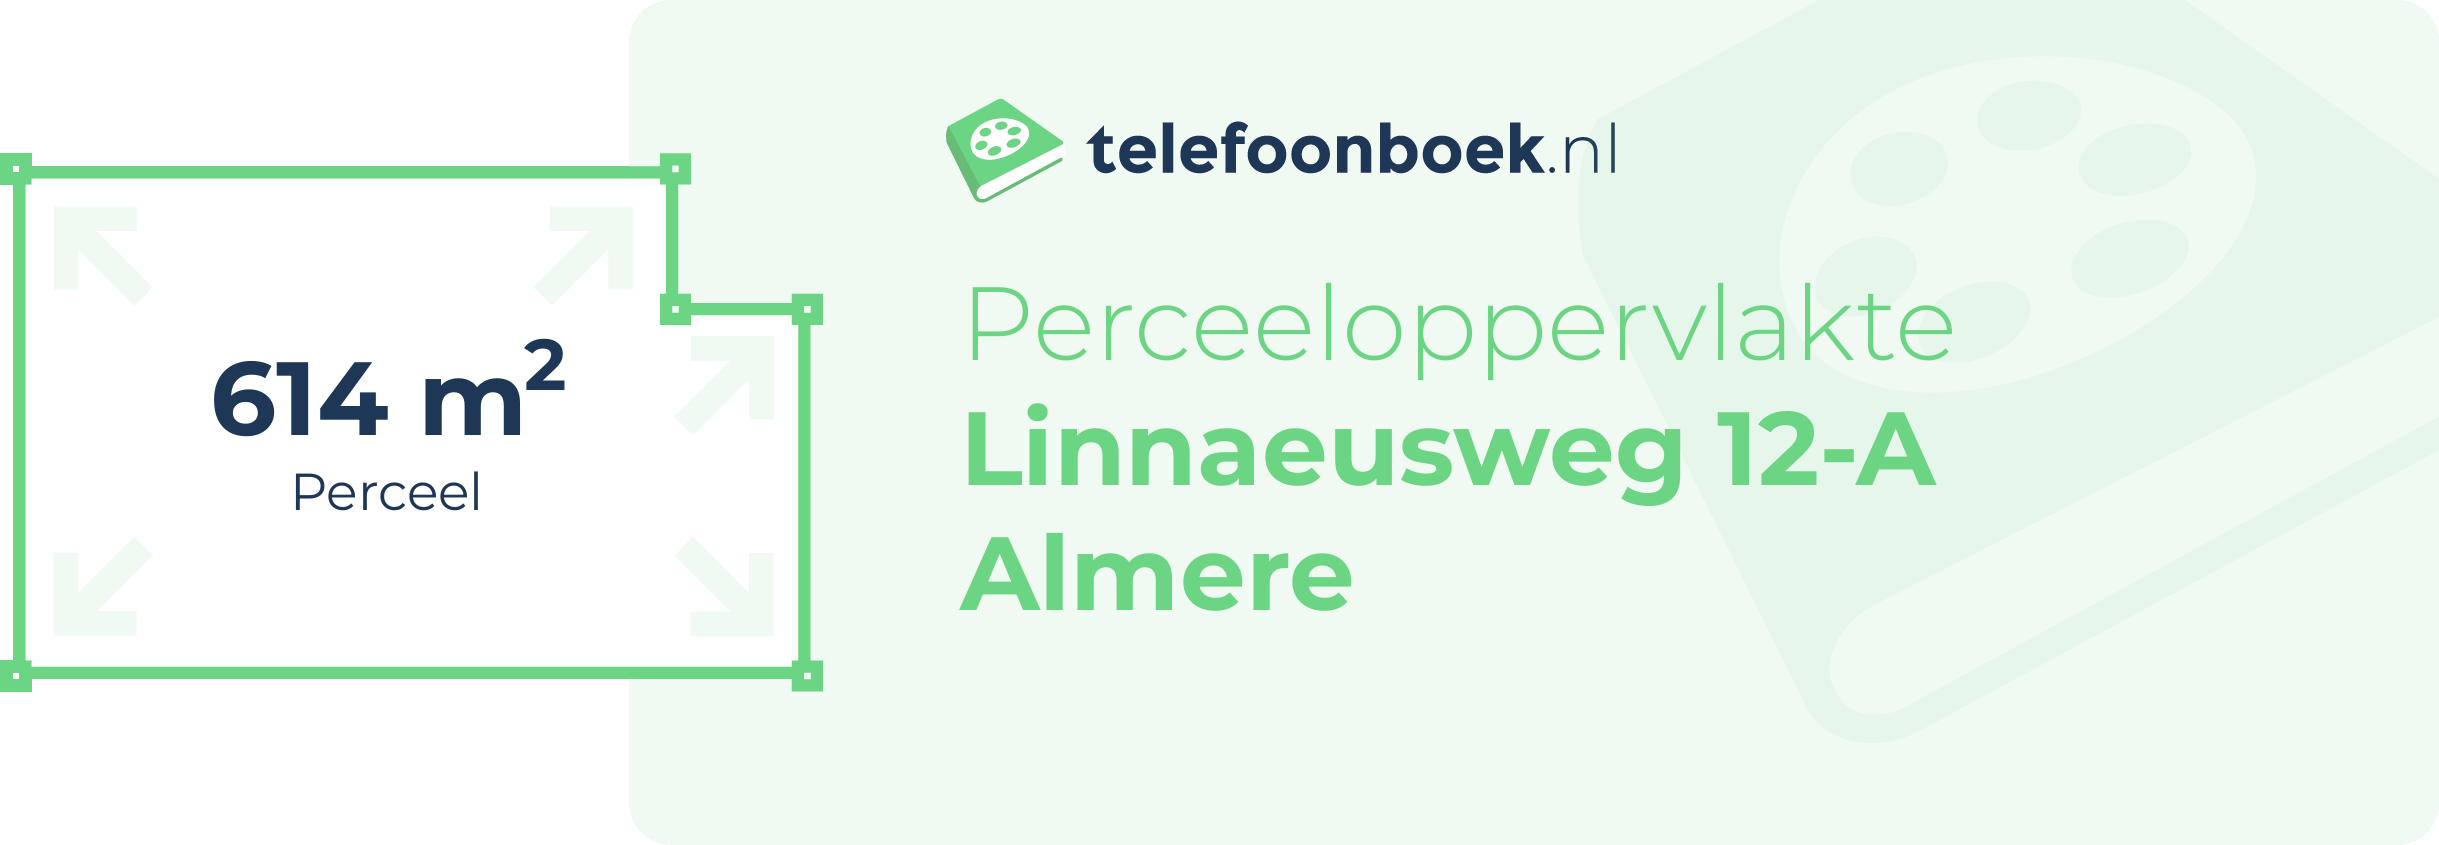 Perceeloppervlakte Linnaeusweg 12-A Almere